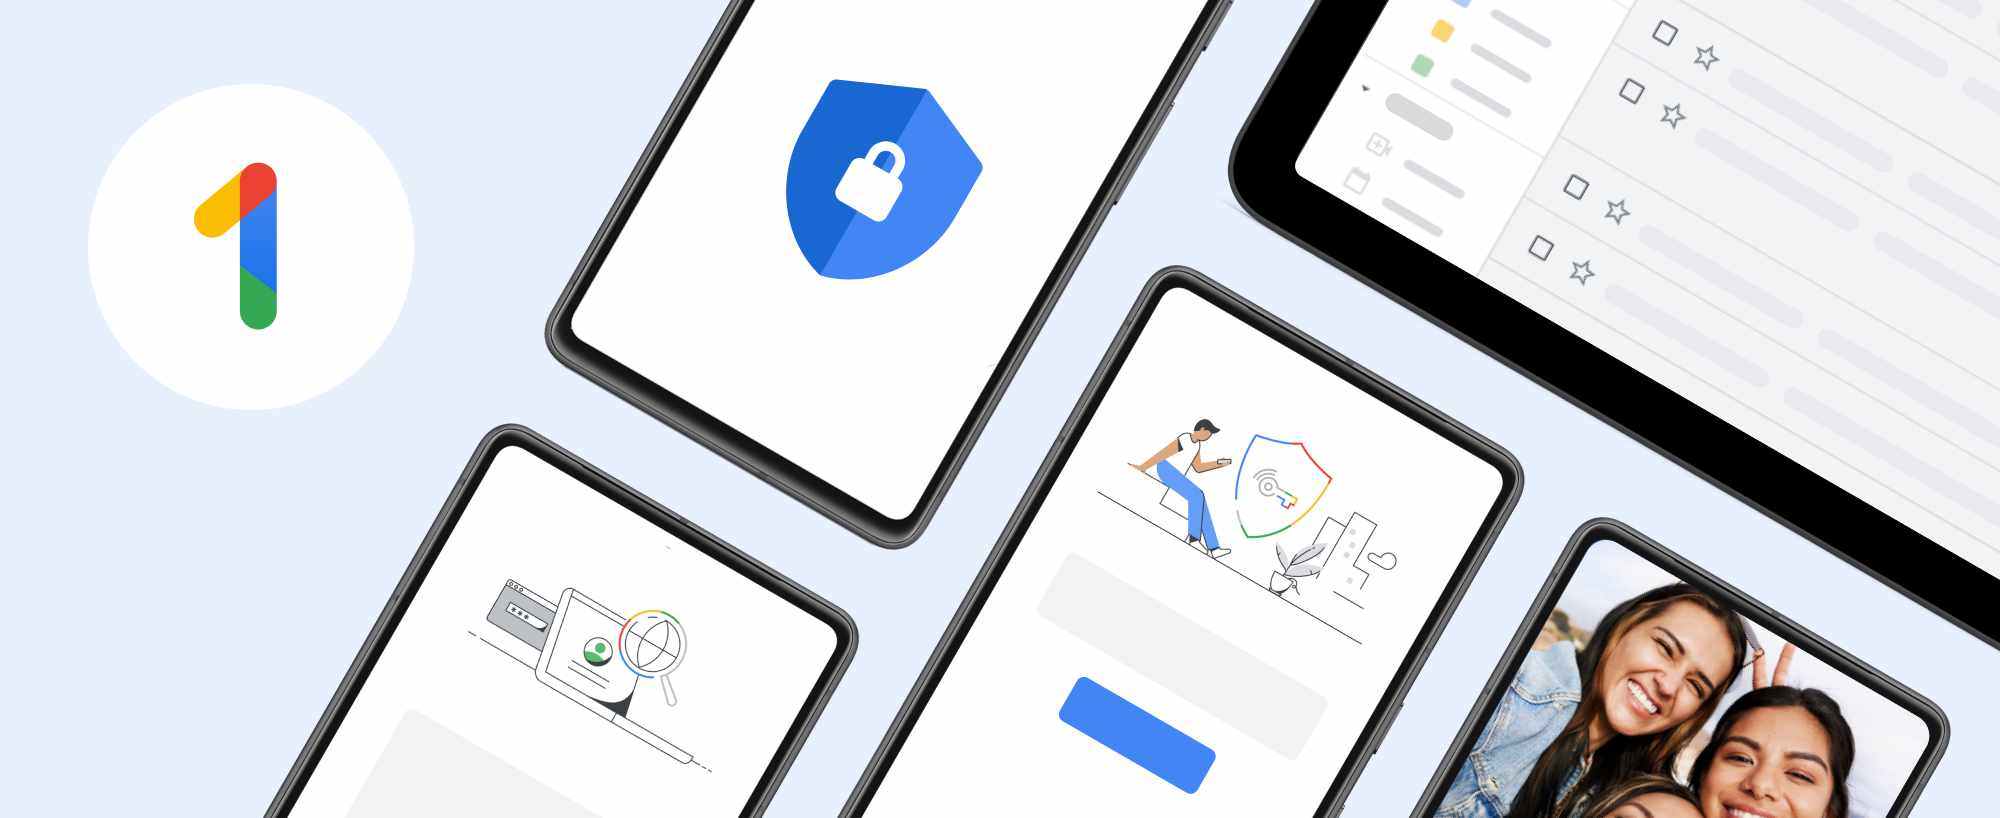 Google One VPN ya está disponible para todas las tarifas